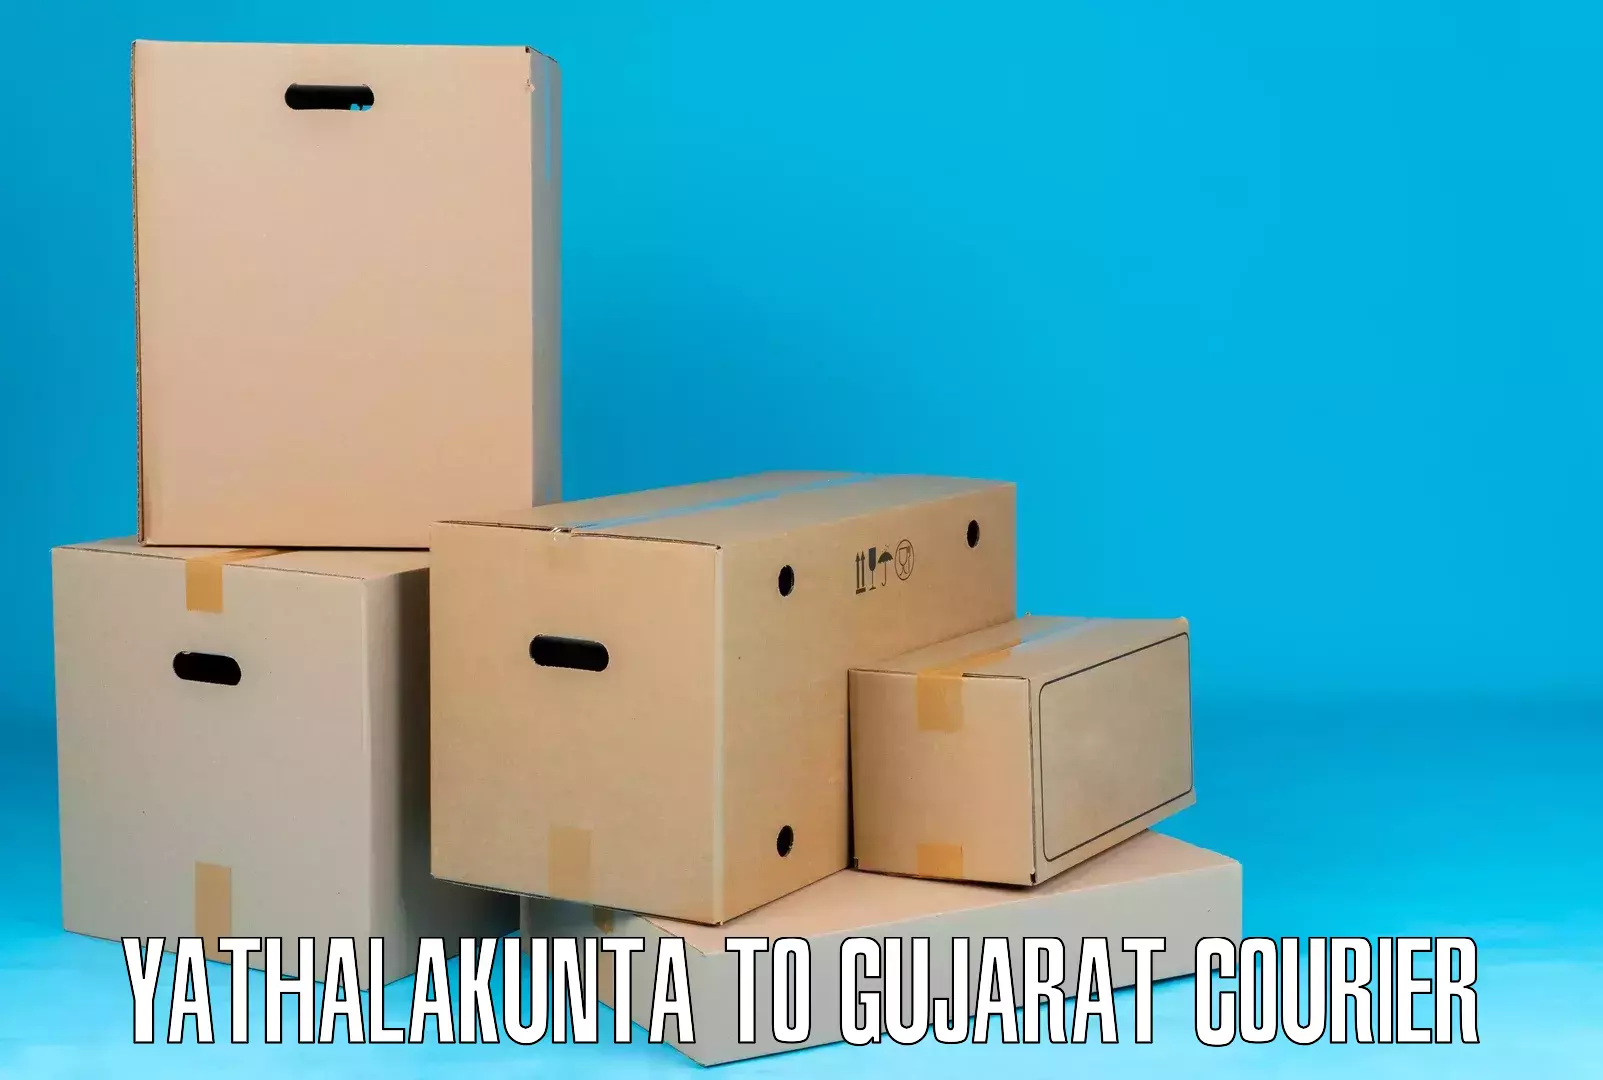 Courier app Yathalakunta to Gujarat